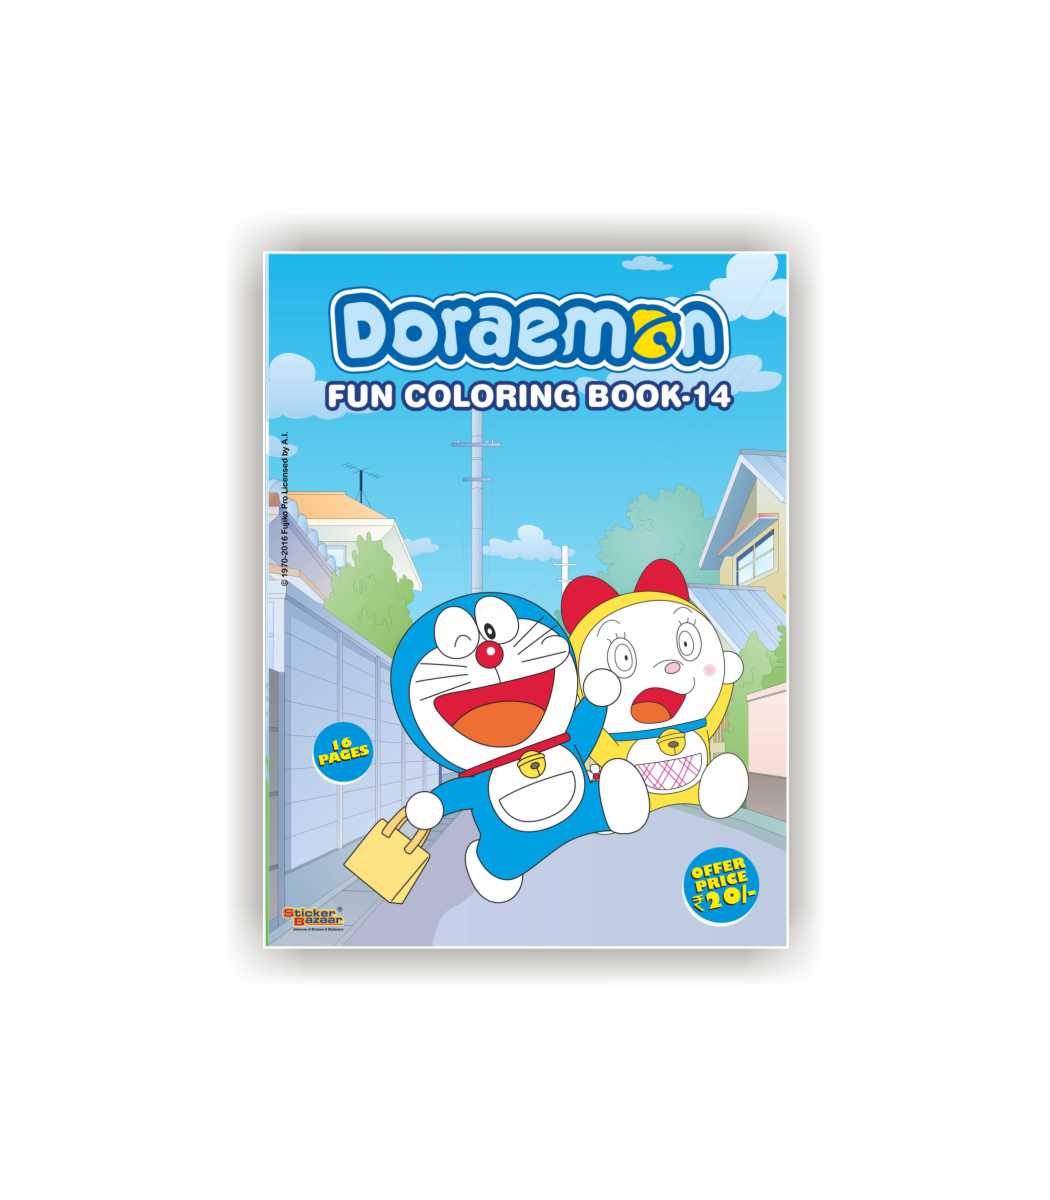 Doraemon Fun Coloring Book